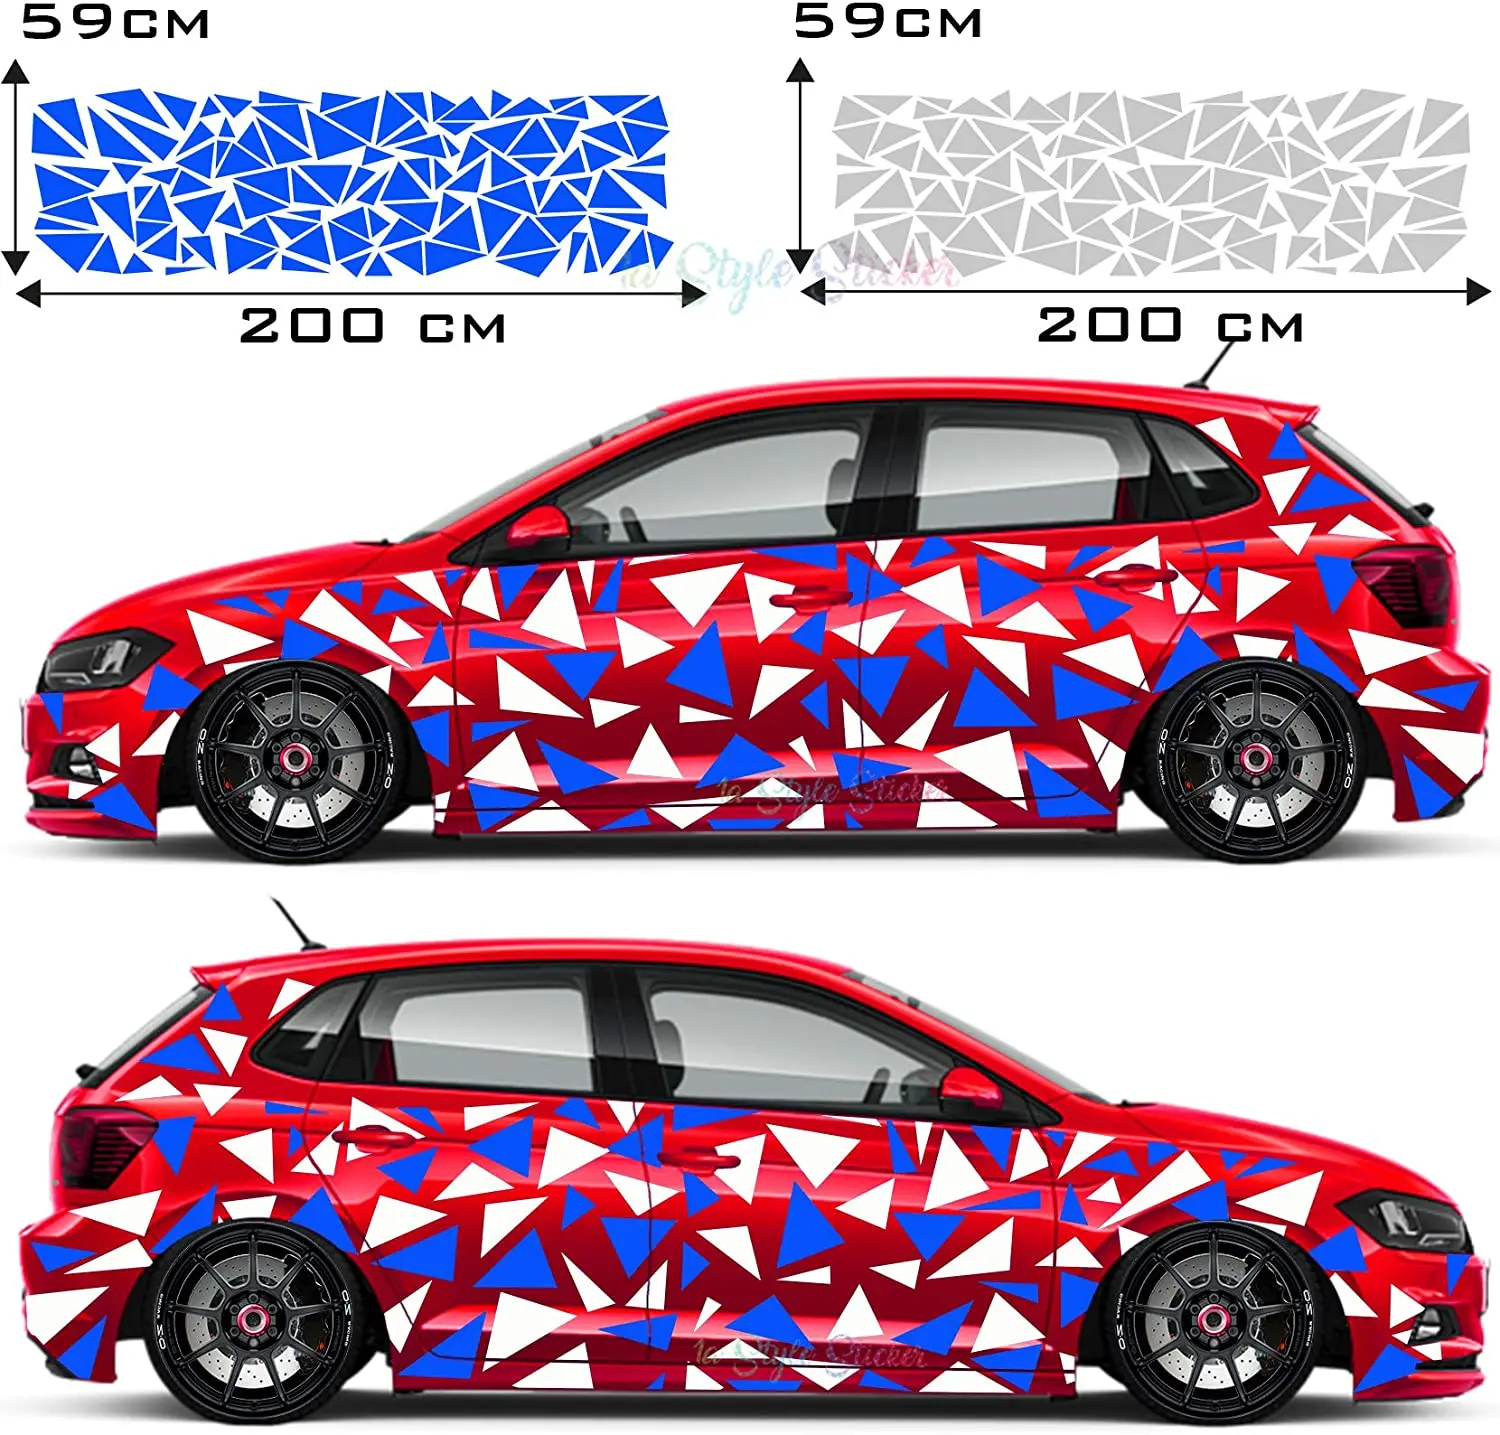 

Автомобильная наклейка с заостренными треугольниками и рисунком автомобиля, 2 цвета, камуфляжный вид, камуфляжная наклейка, набор камуфляжных стилей для тюнинга